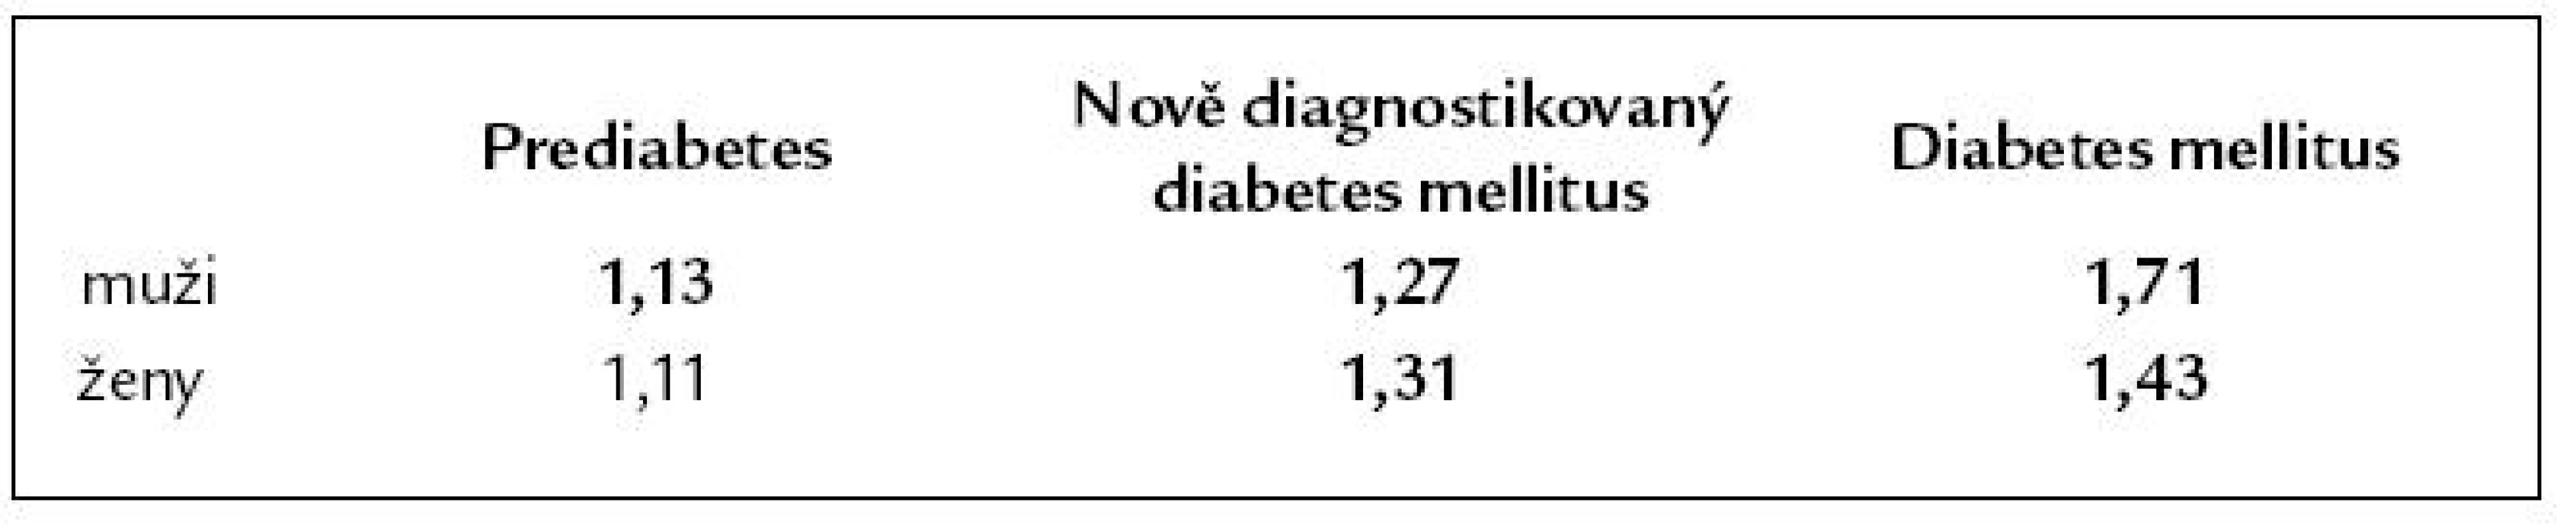 Zvýšené nádorové riziko prediabetu a diabetu (signifikantní riziko tučně). Podle [11].